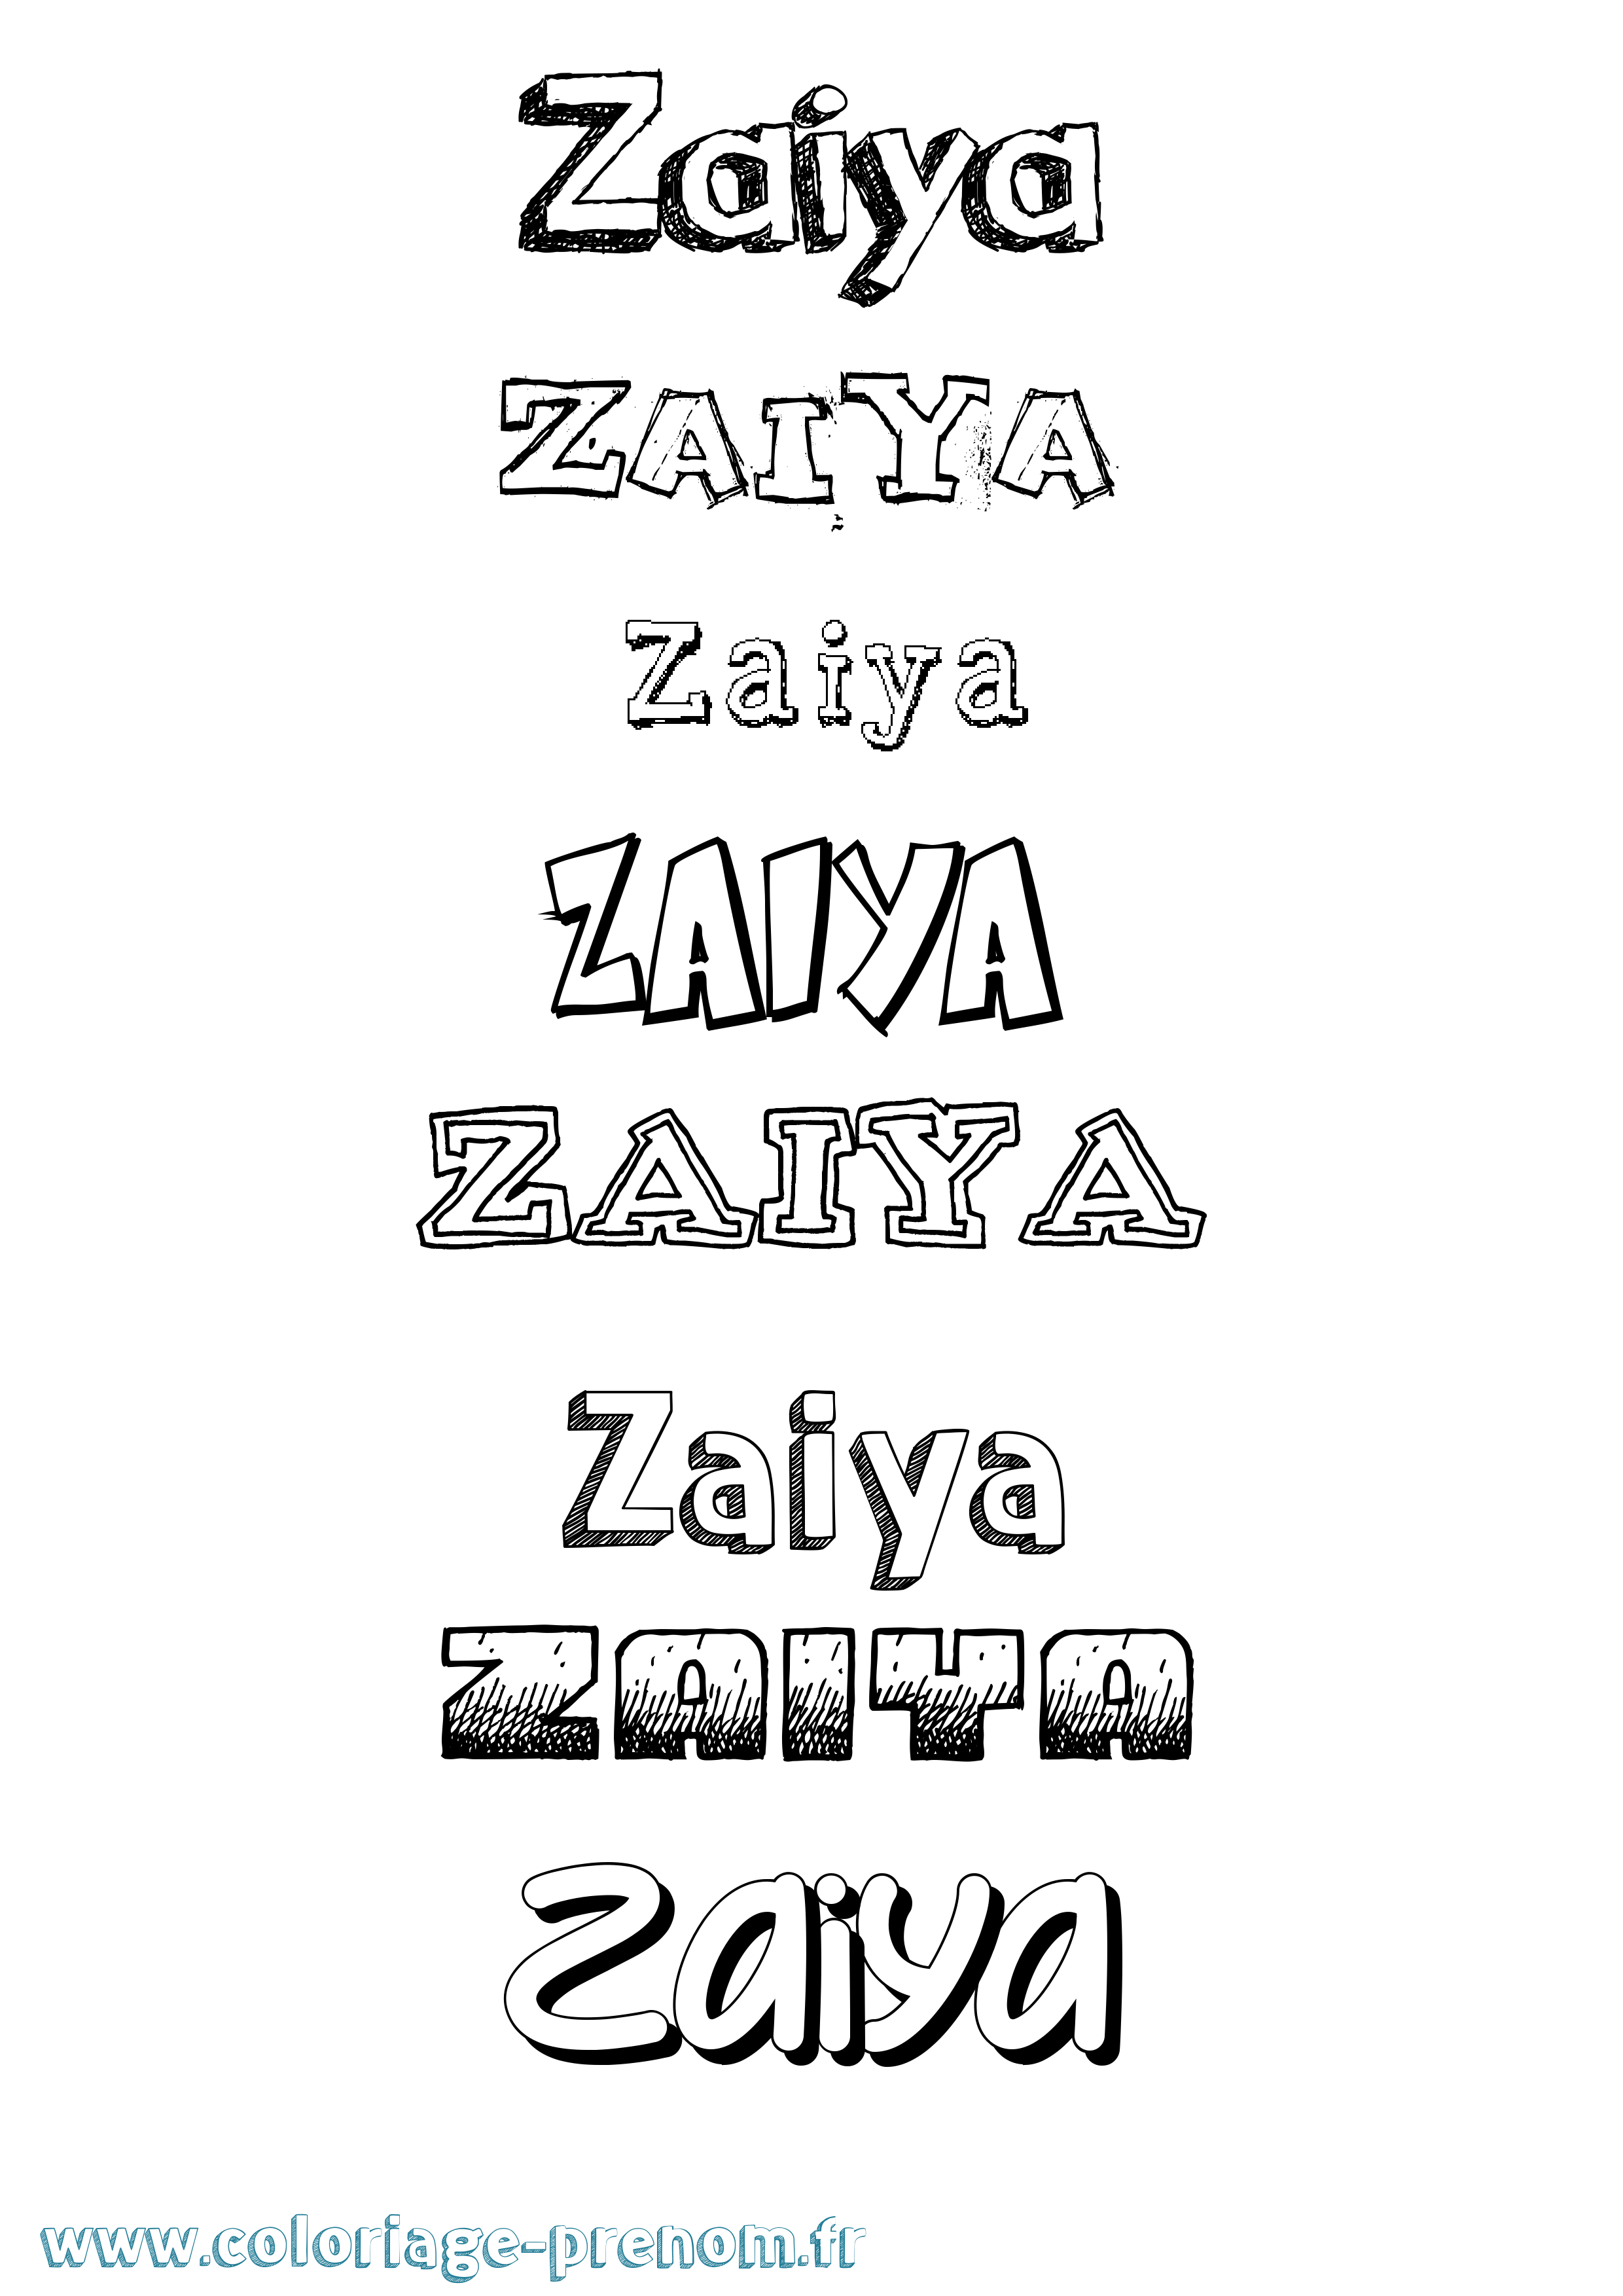 Coloriage prénom Zaiya Dessiné